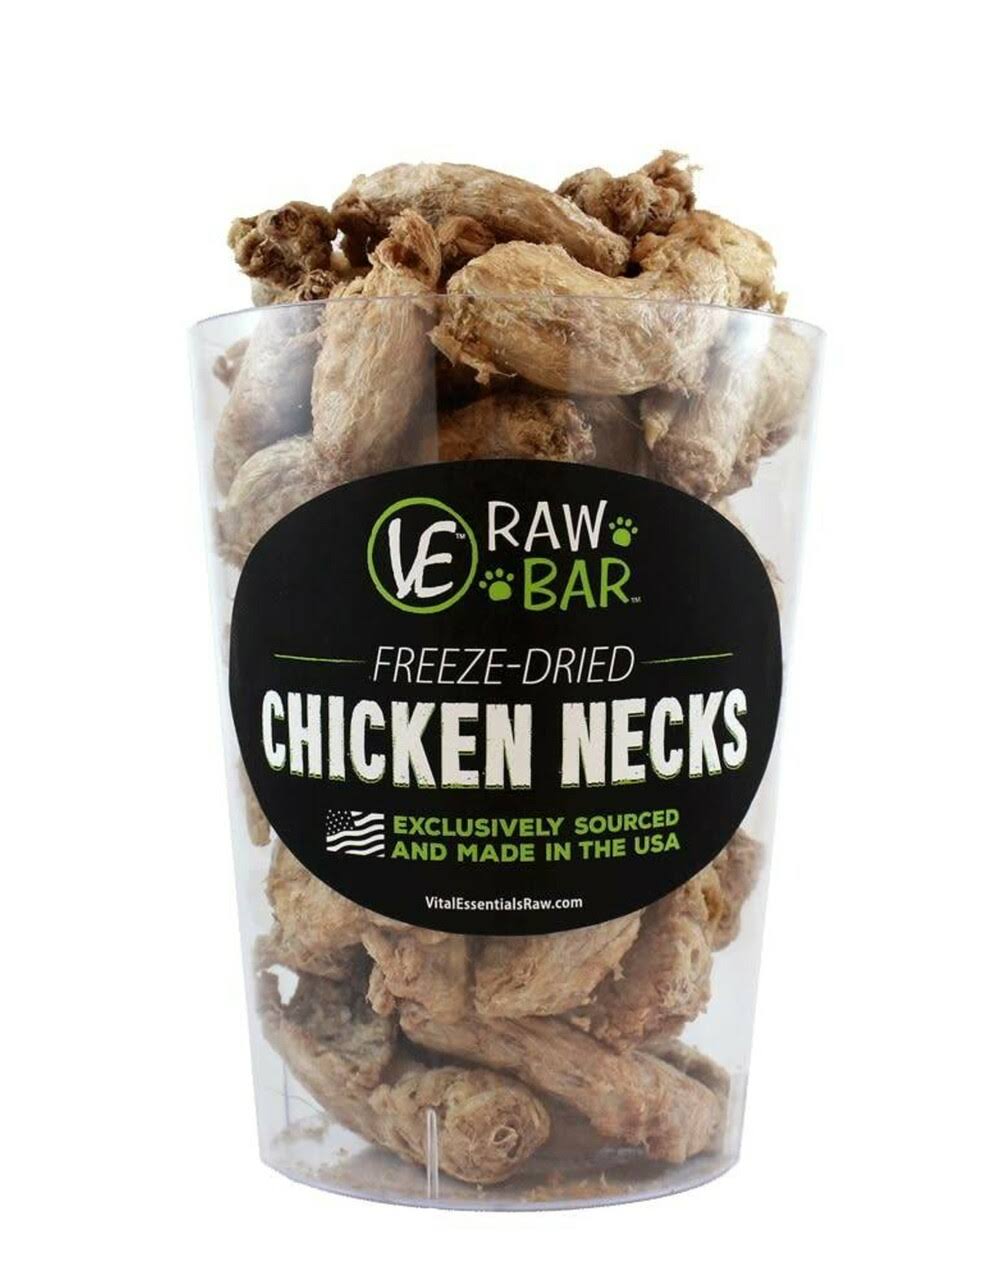 Vital Essentials VE Raw Bar Freeze-Dried Chicken Necks